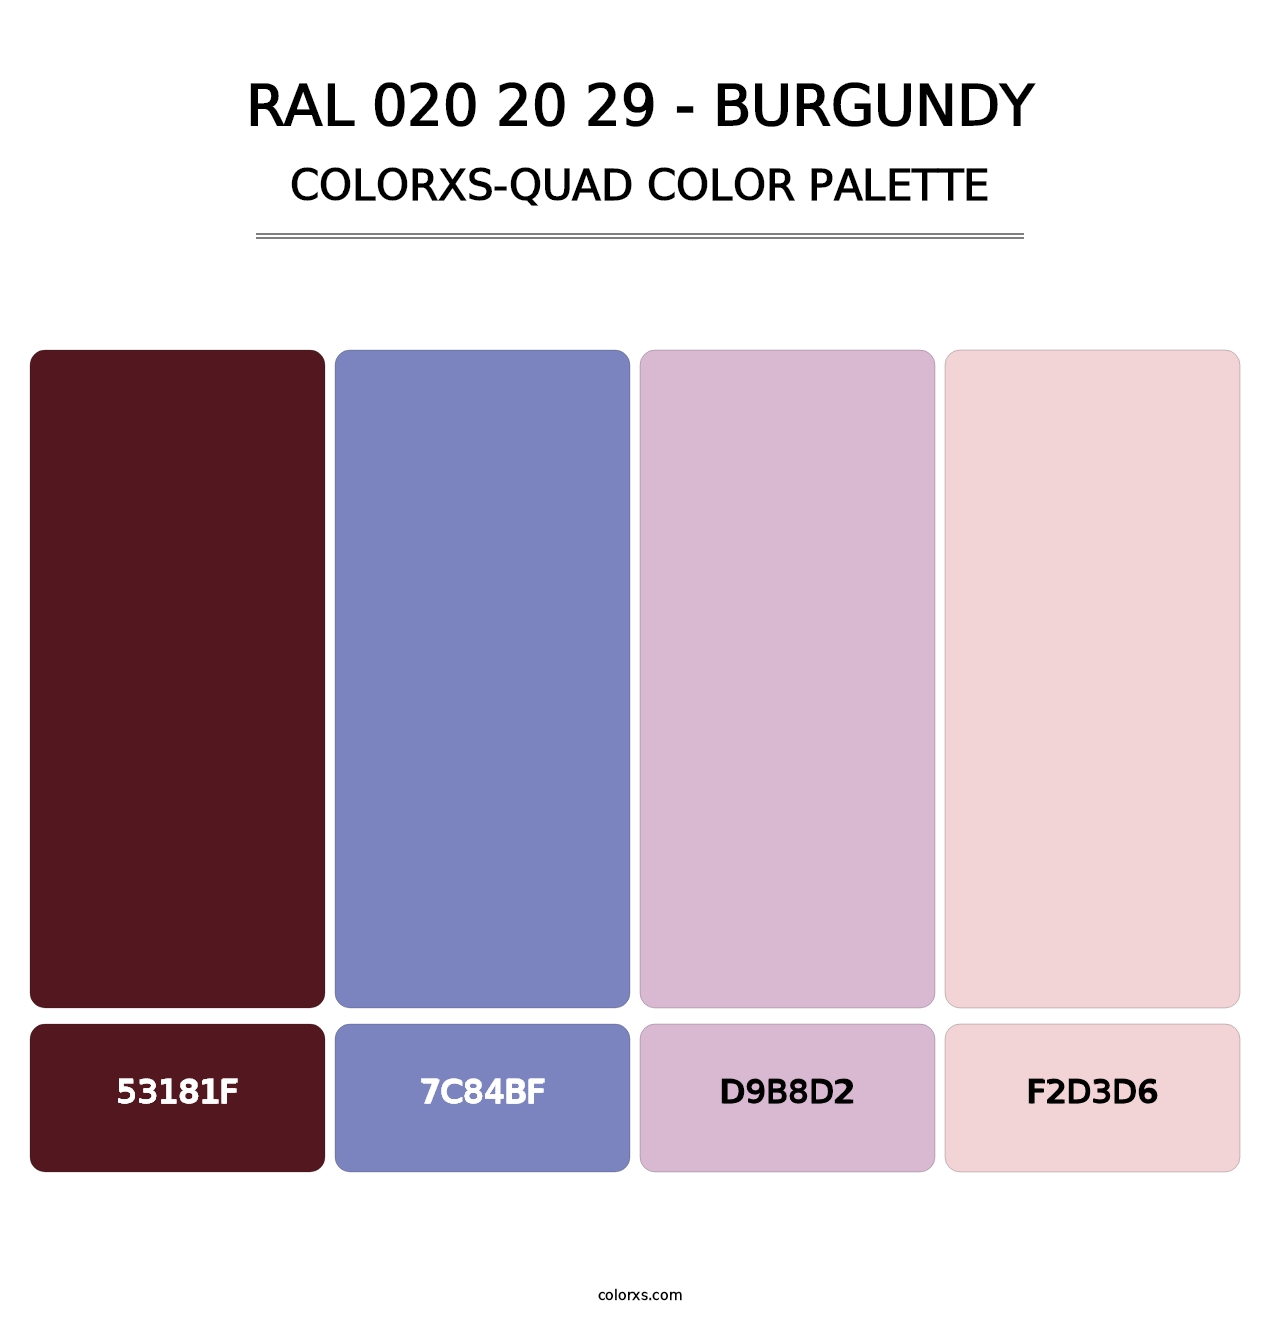 RAL 020 20 29 - Burgundy - Colorxs Quad Palette